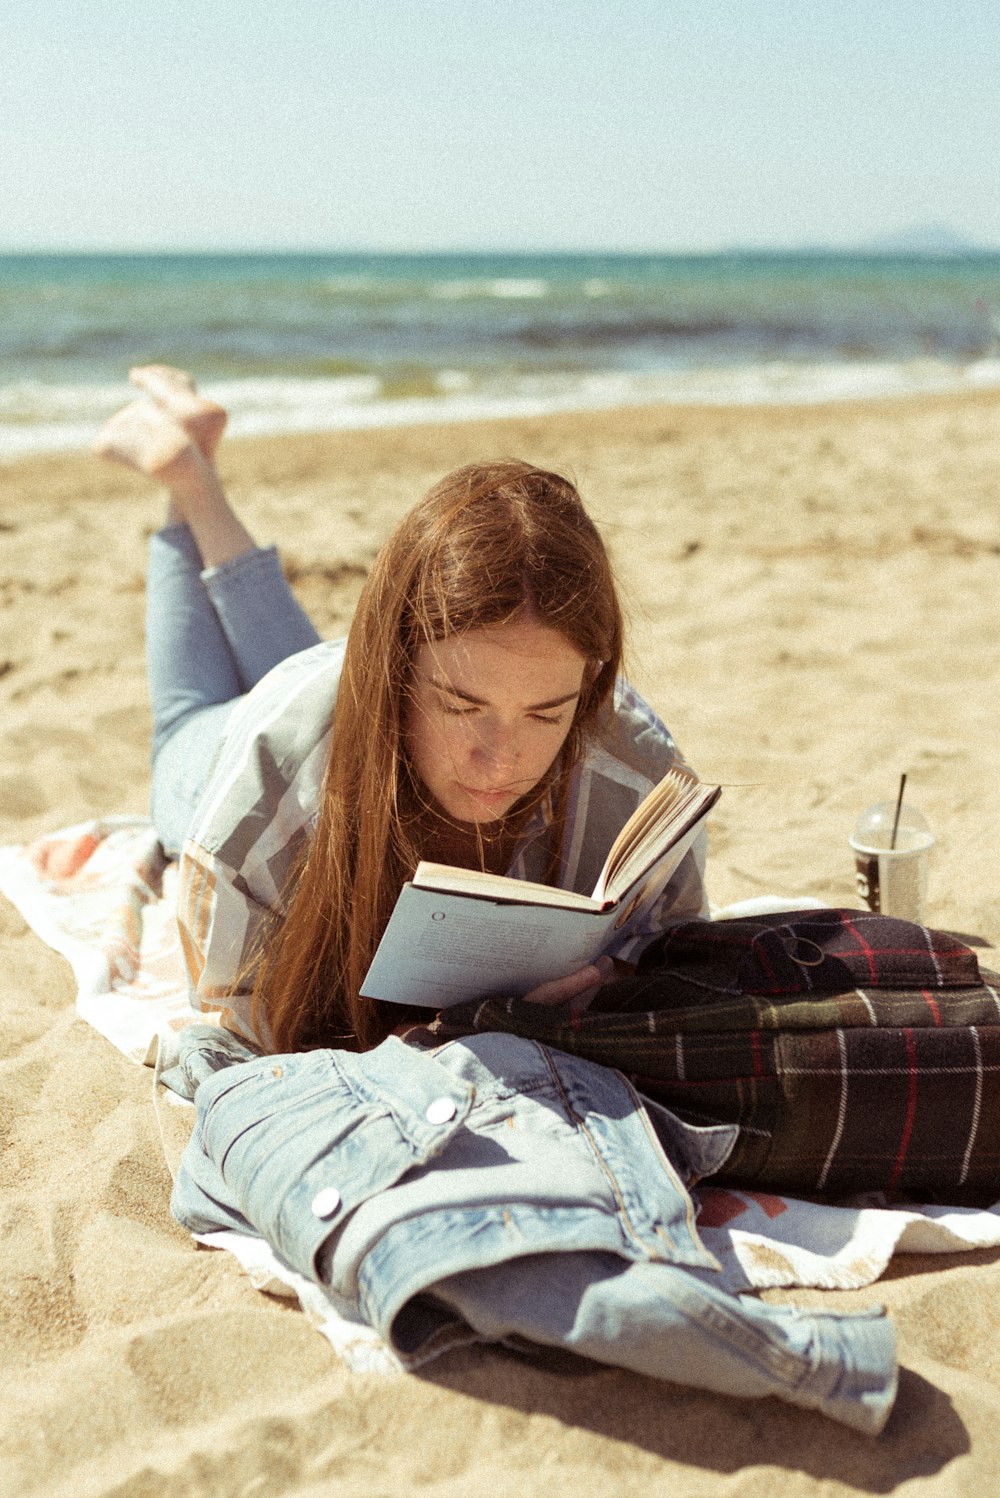 흰색 긴팔 셔츠를 입은 여자는 낮 동안 해변에서 책을 읽고 있다